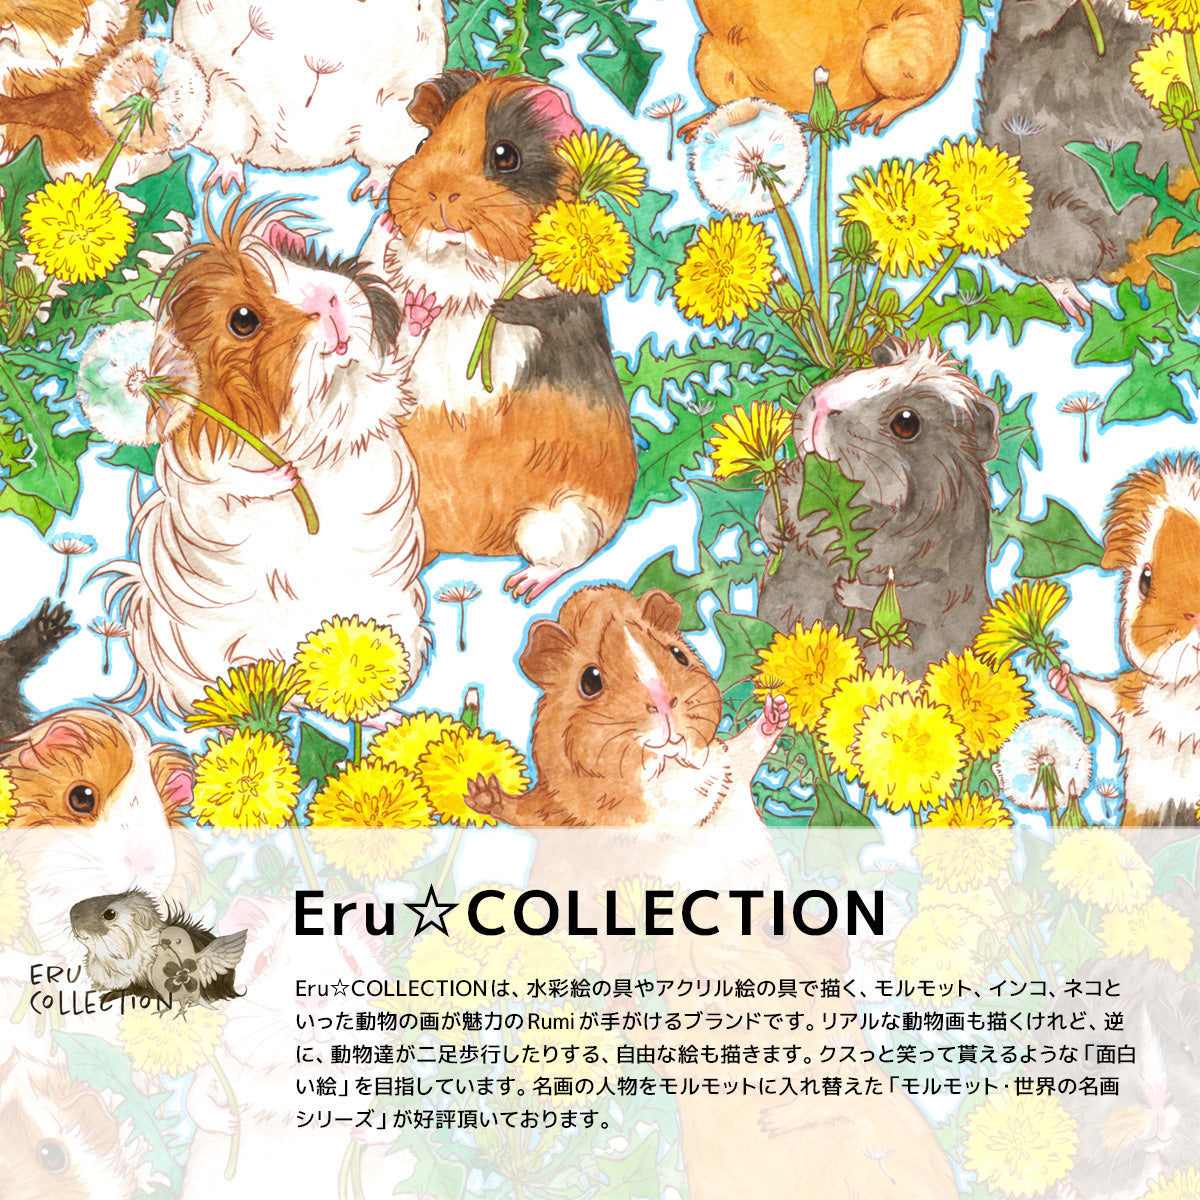 Rumiデザイン、ERu☆COLLECTIONブランドのグリップケース